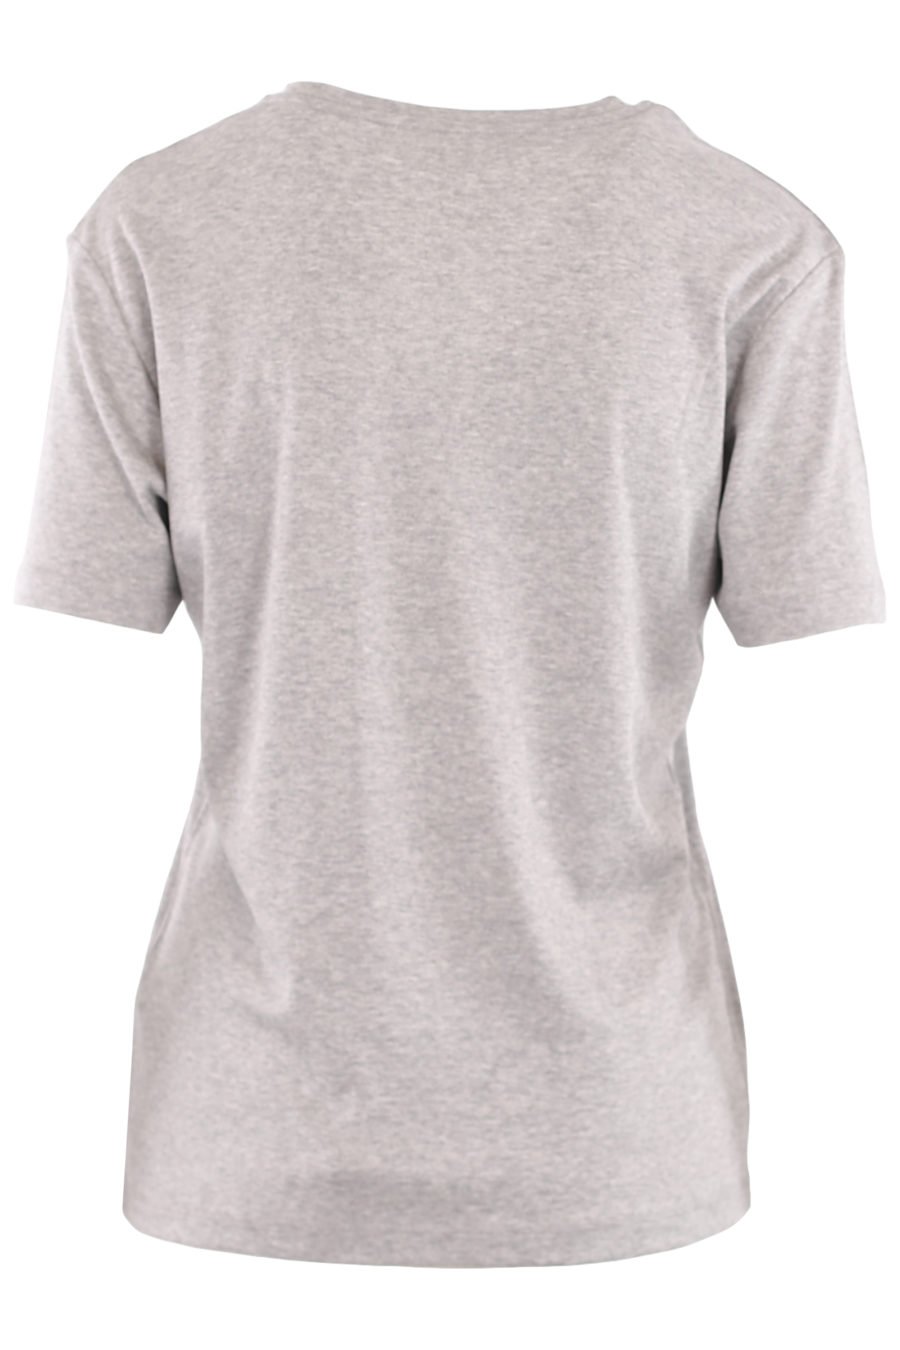 Camiseta unisex de color gris con logotipo - 0a45629aeabd03ccac598ef23ae992b26c1f672c